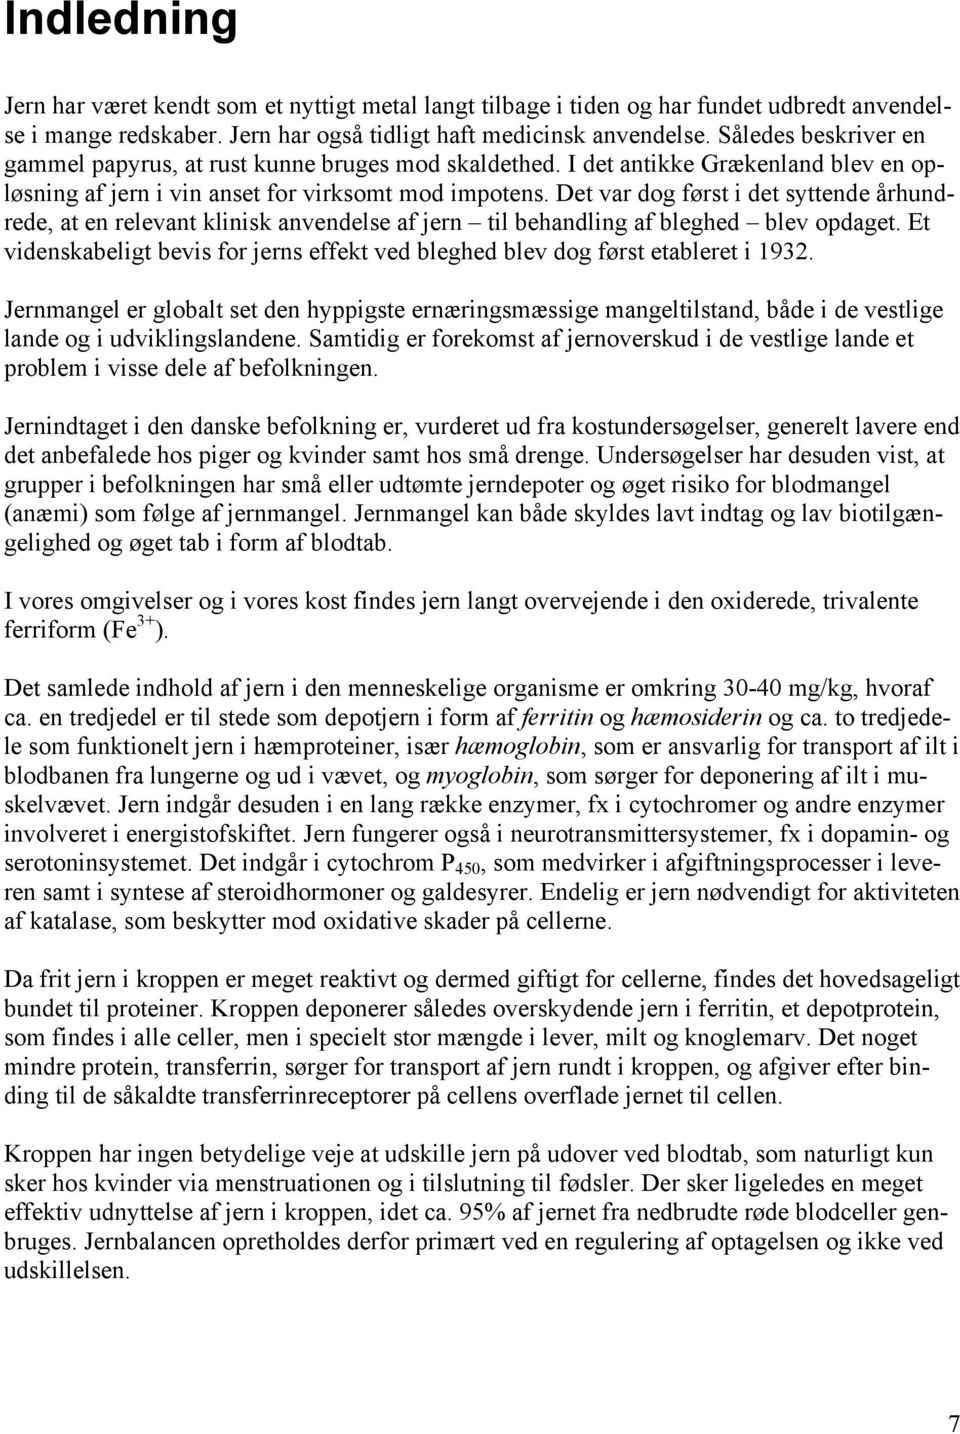 Jern bør forsyningen i den danske befolkning forbedres? - PDF Free ...